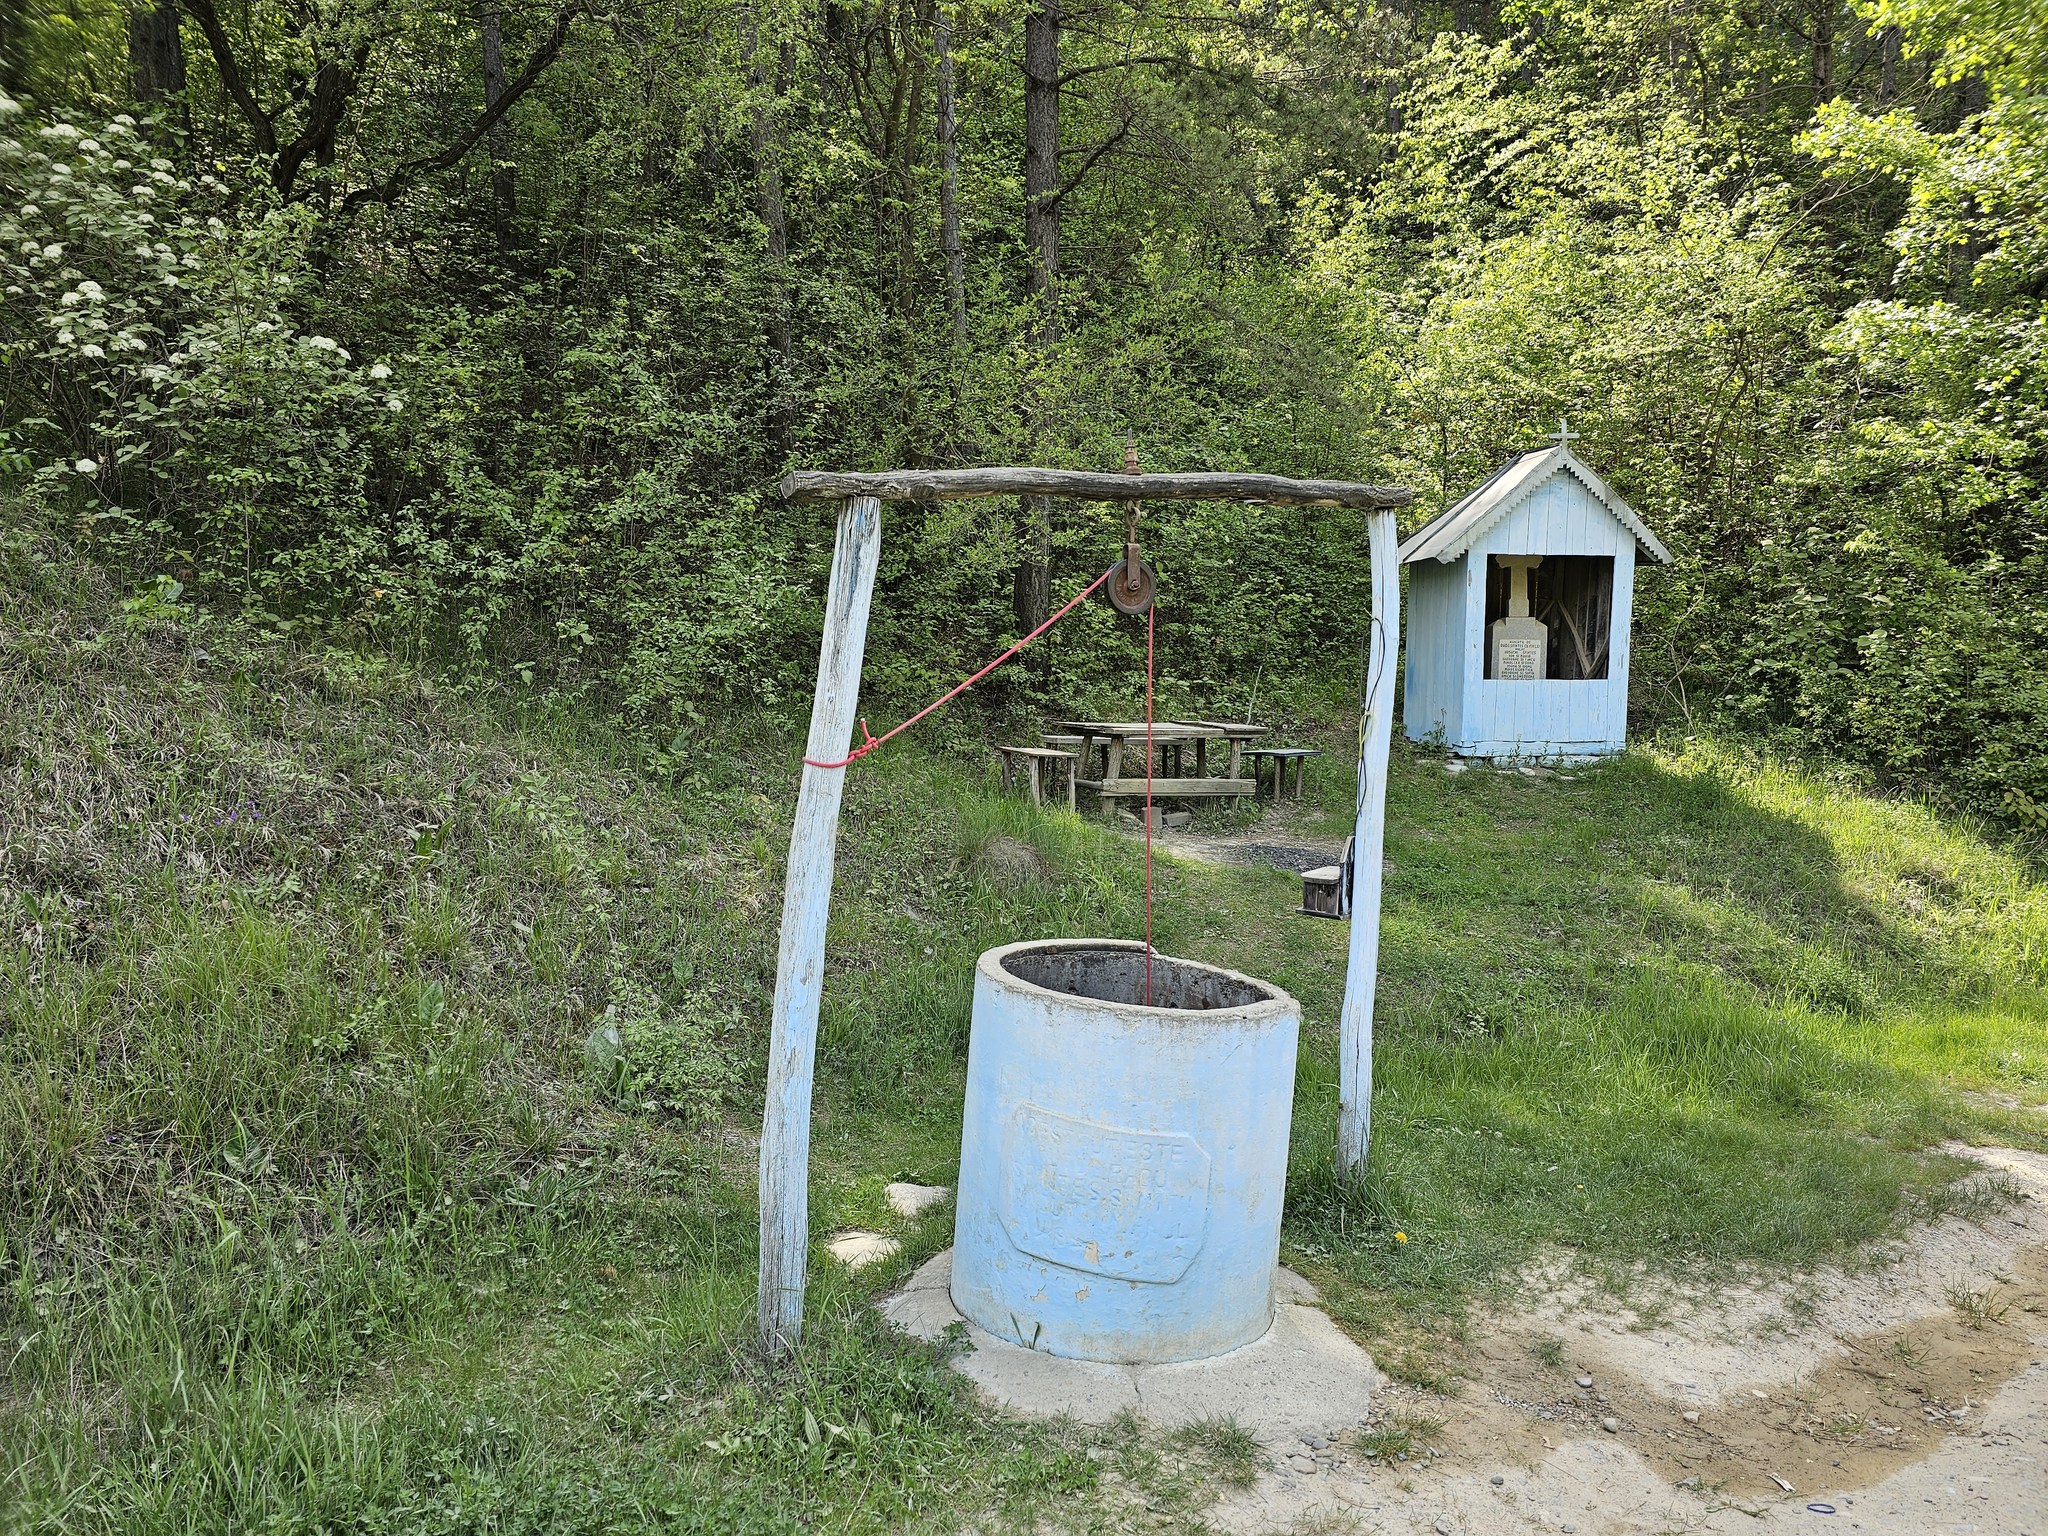 Platoul Meledic / Podél prašných cest jsou časté studny, dokonce i ve vesnicích jsou běžně v plotech, aby byly přístupné pro majitele i poutníky.